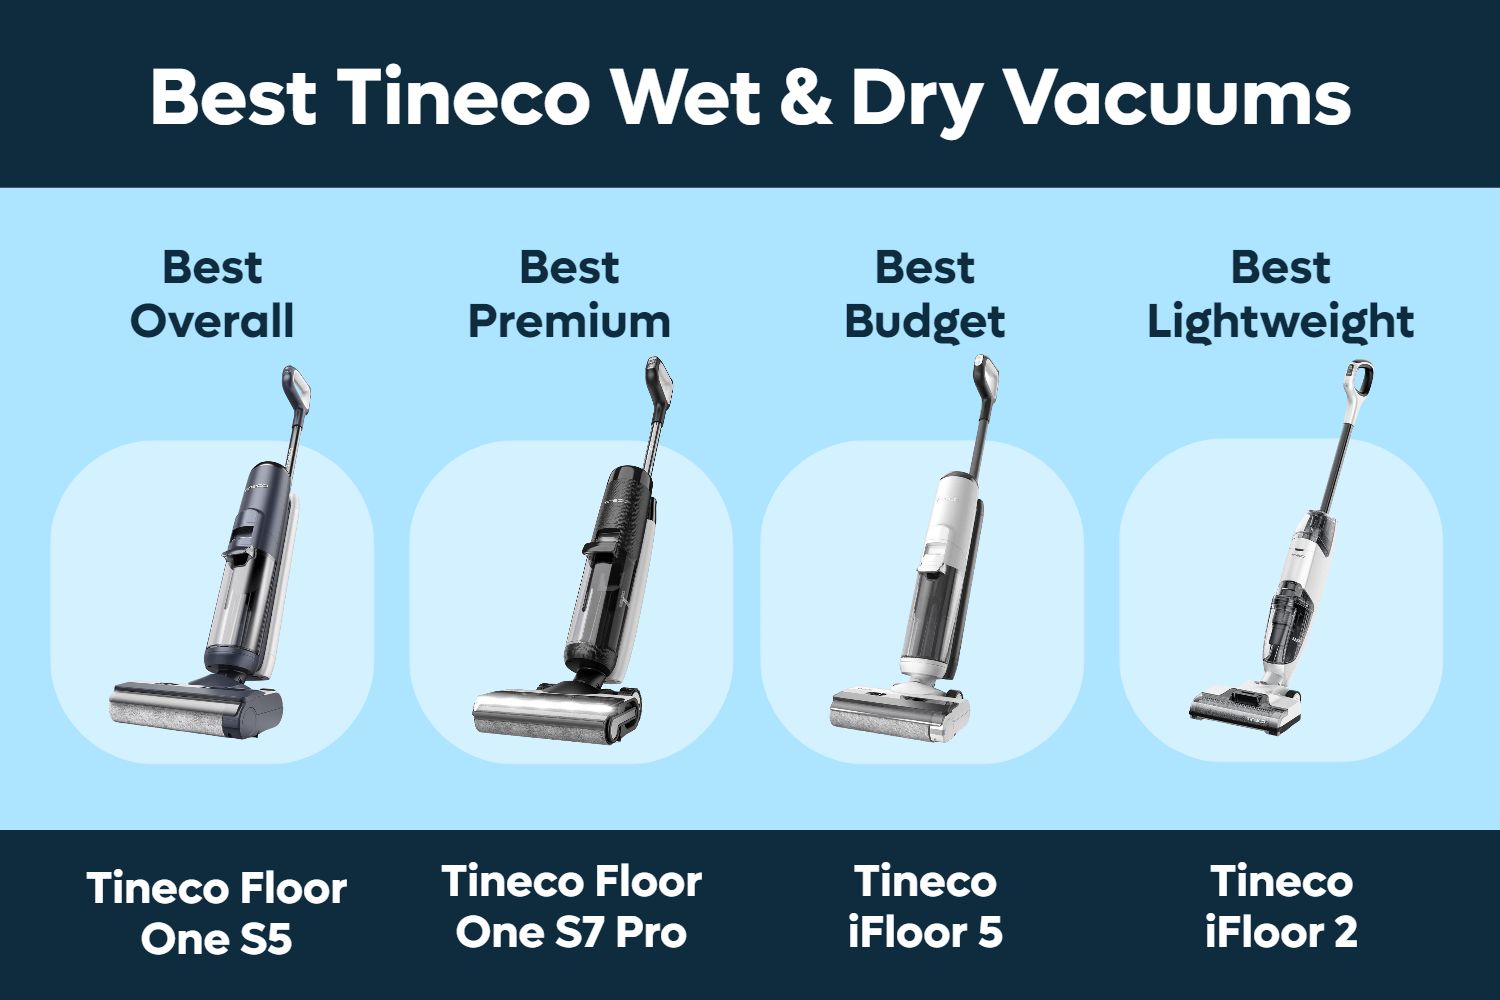 Best Tineco Wet & Dry Vacuum